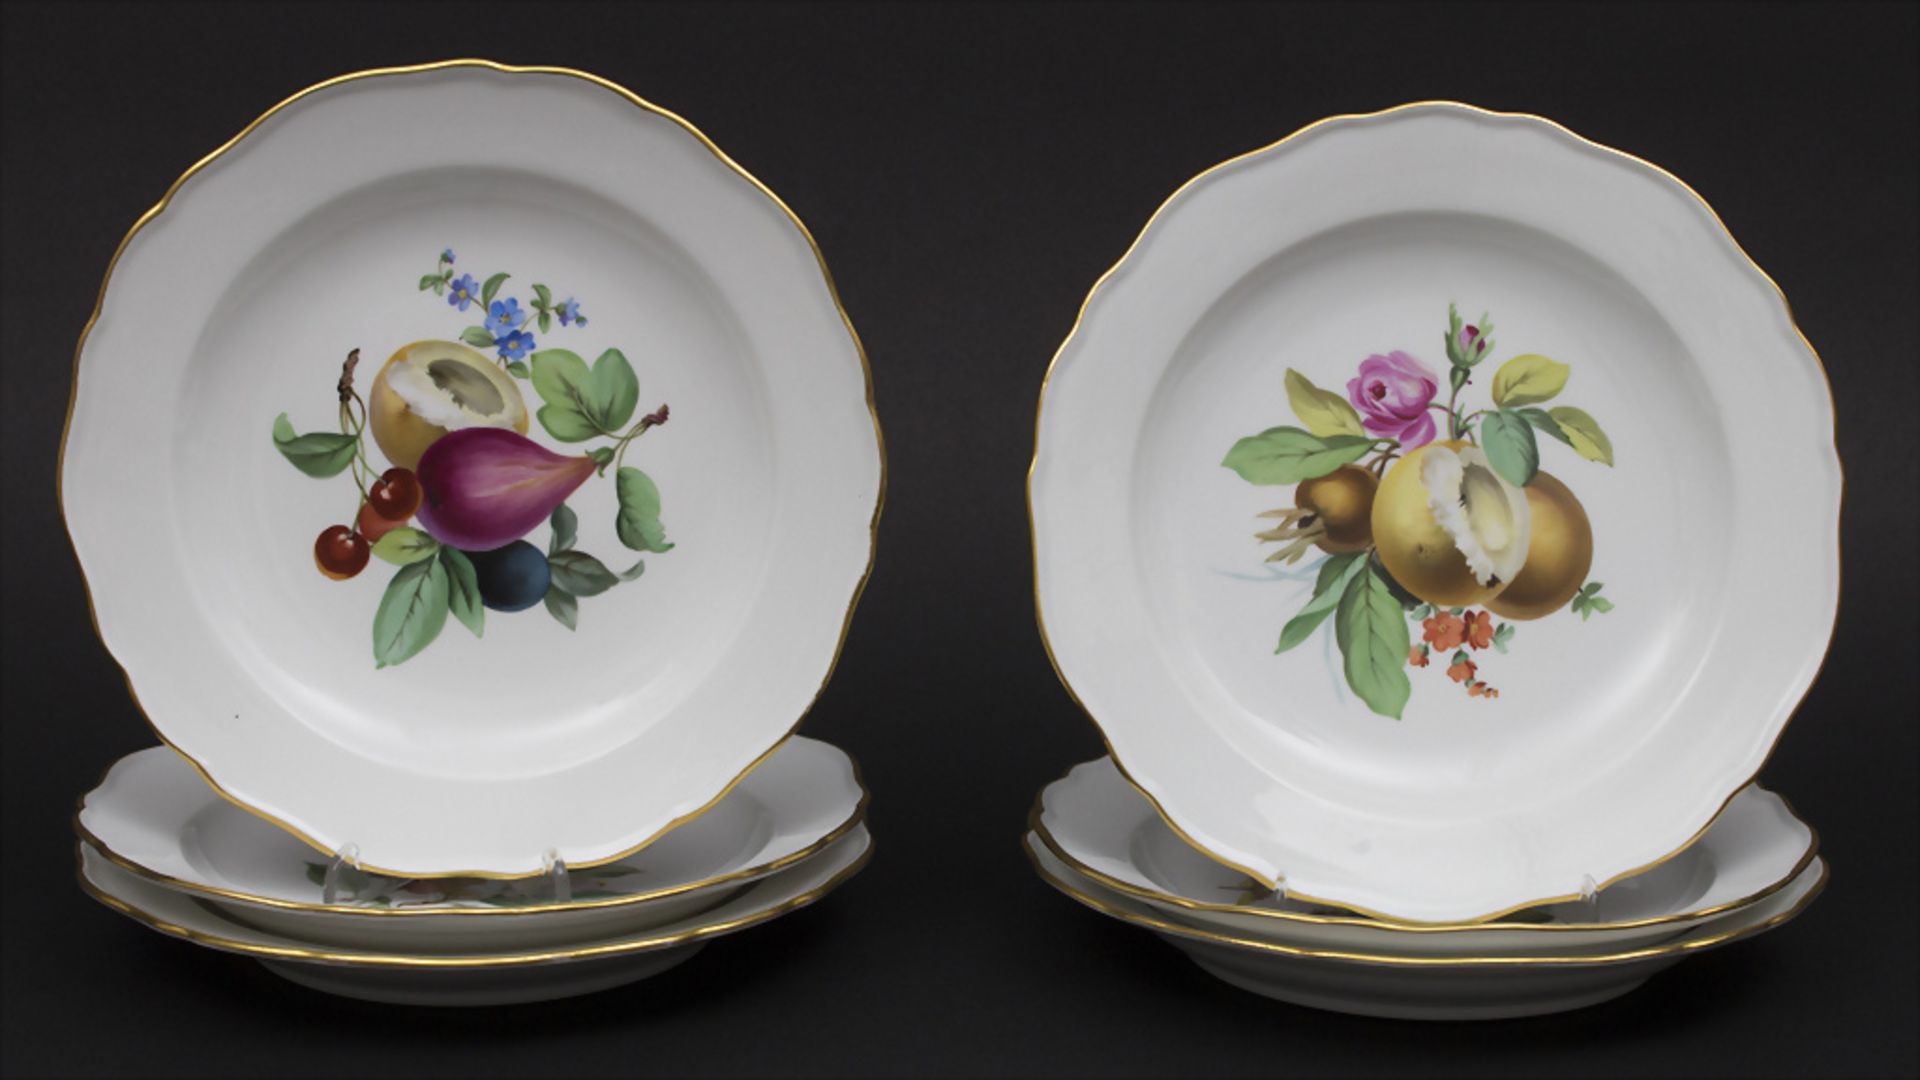 6 Teller mit Früchte- und Blumenmalerei / 6 plates with fruits and flowers, Meissen, um 1860